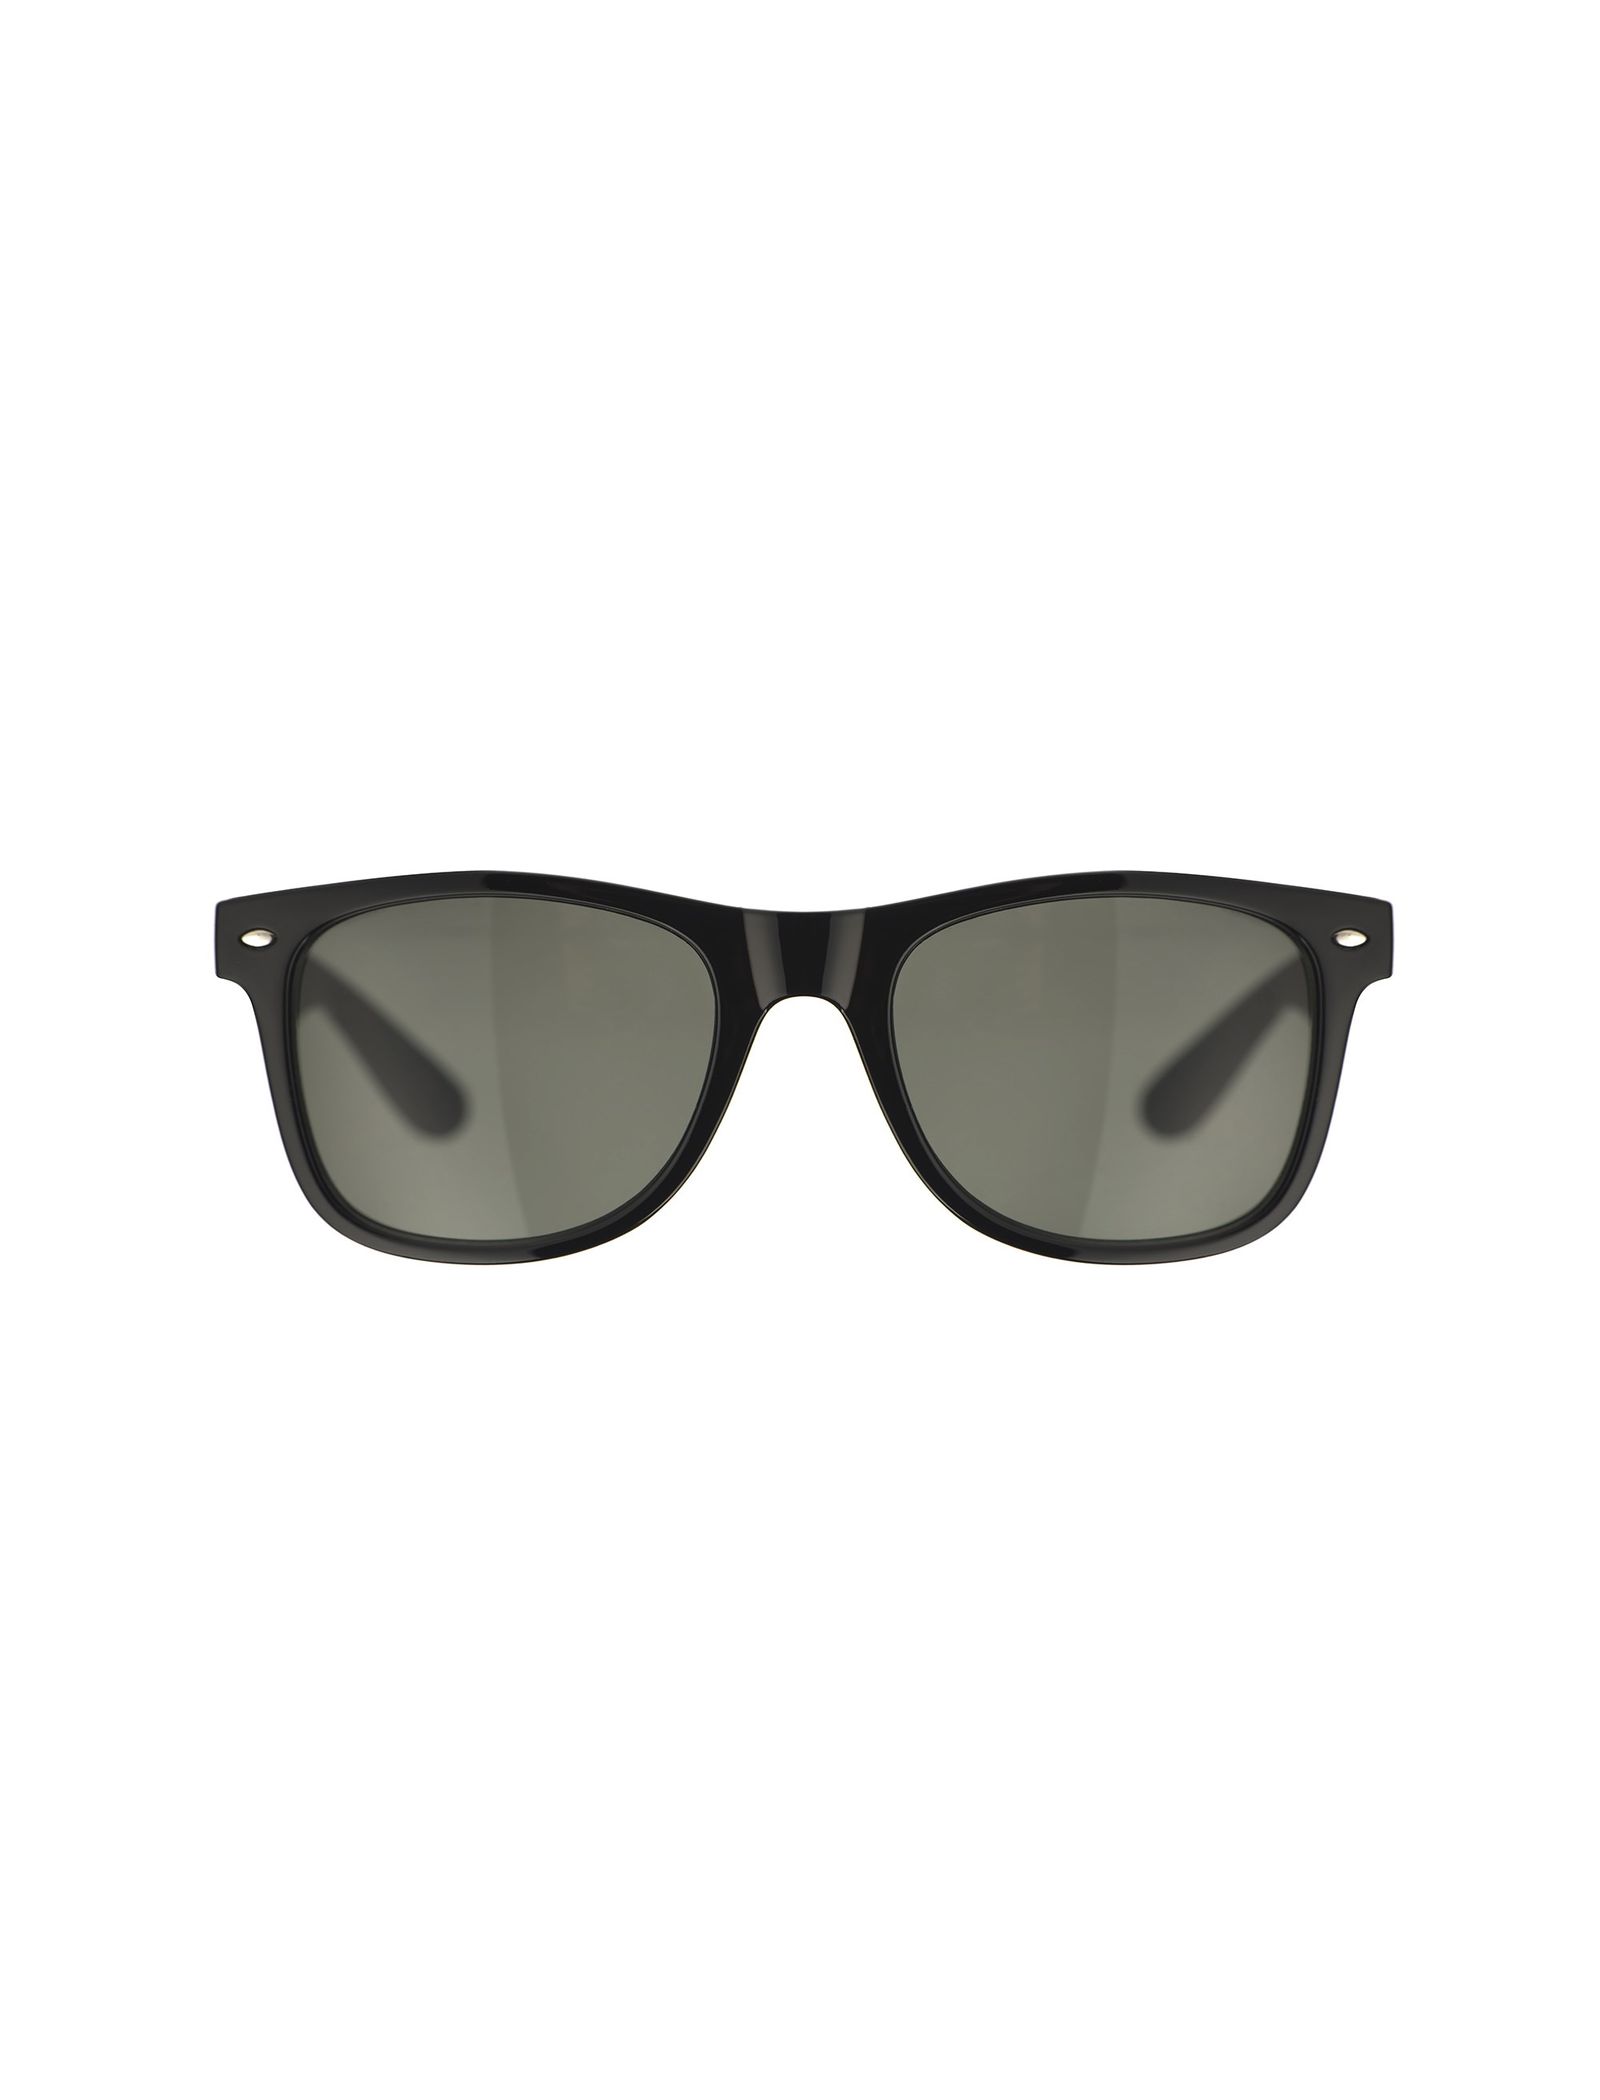 عینک آفتابی مربعی زنانه - اونلی تک سایز - مشکي - 1